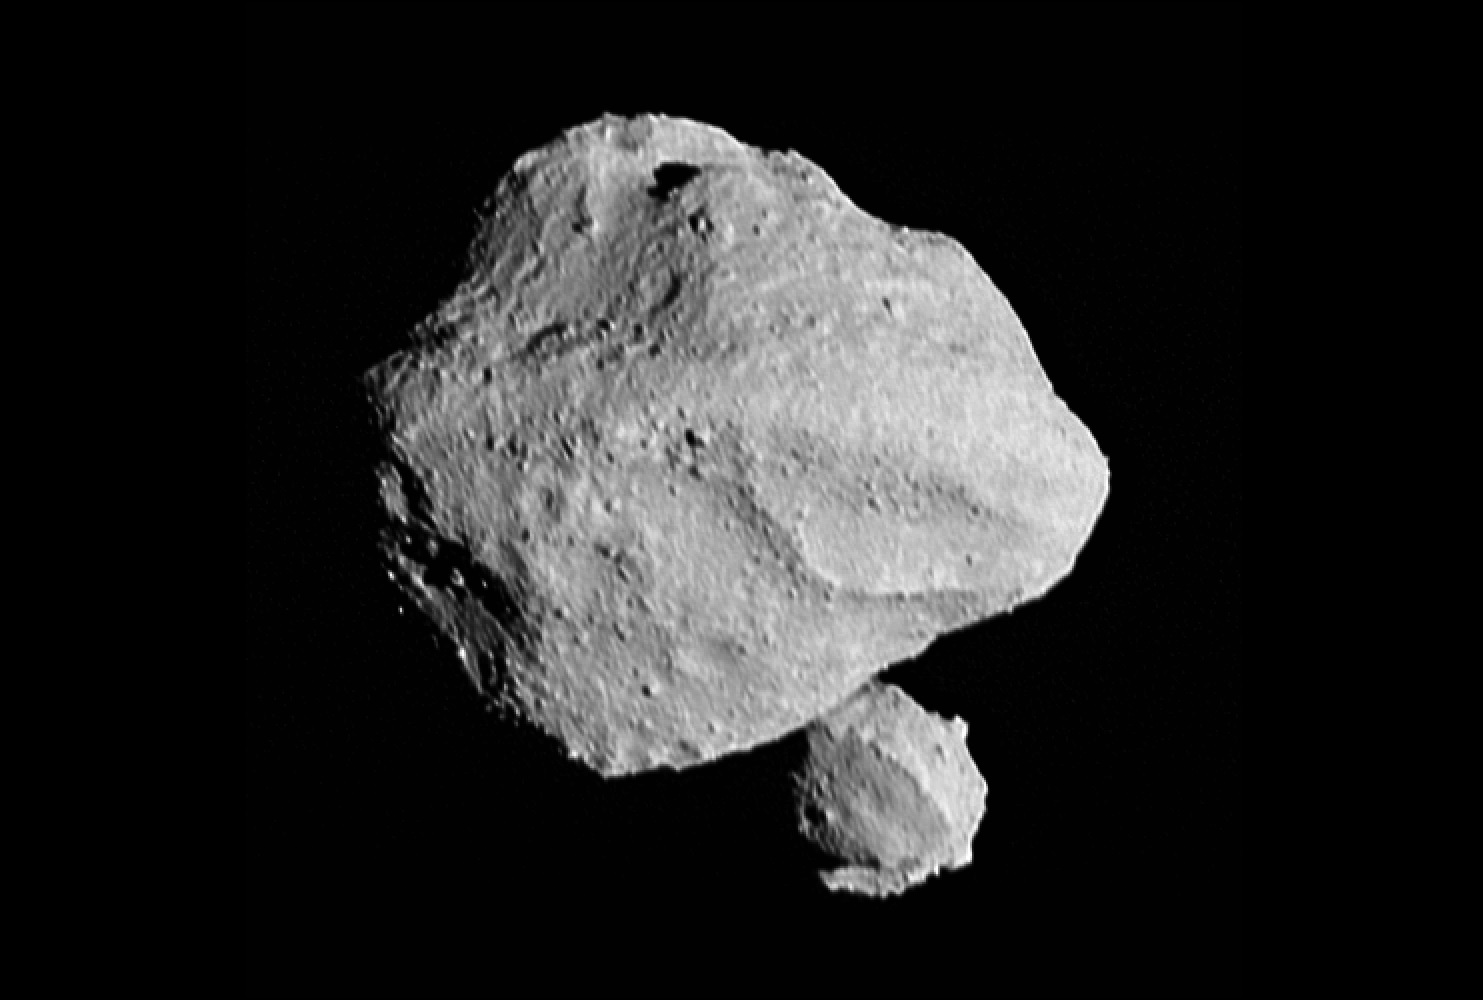 A NASA űrszondája egy aszteroida körül keringő miniholdat fedezett fel